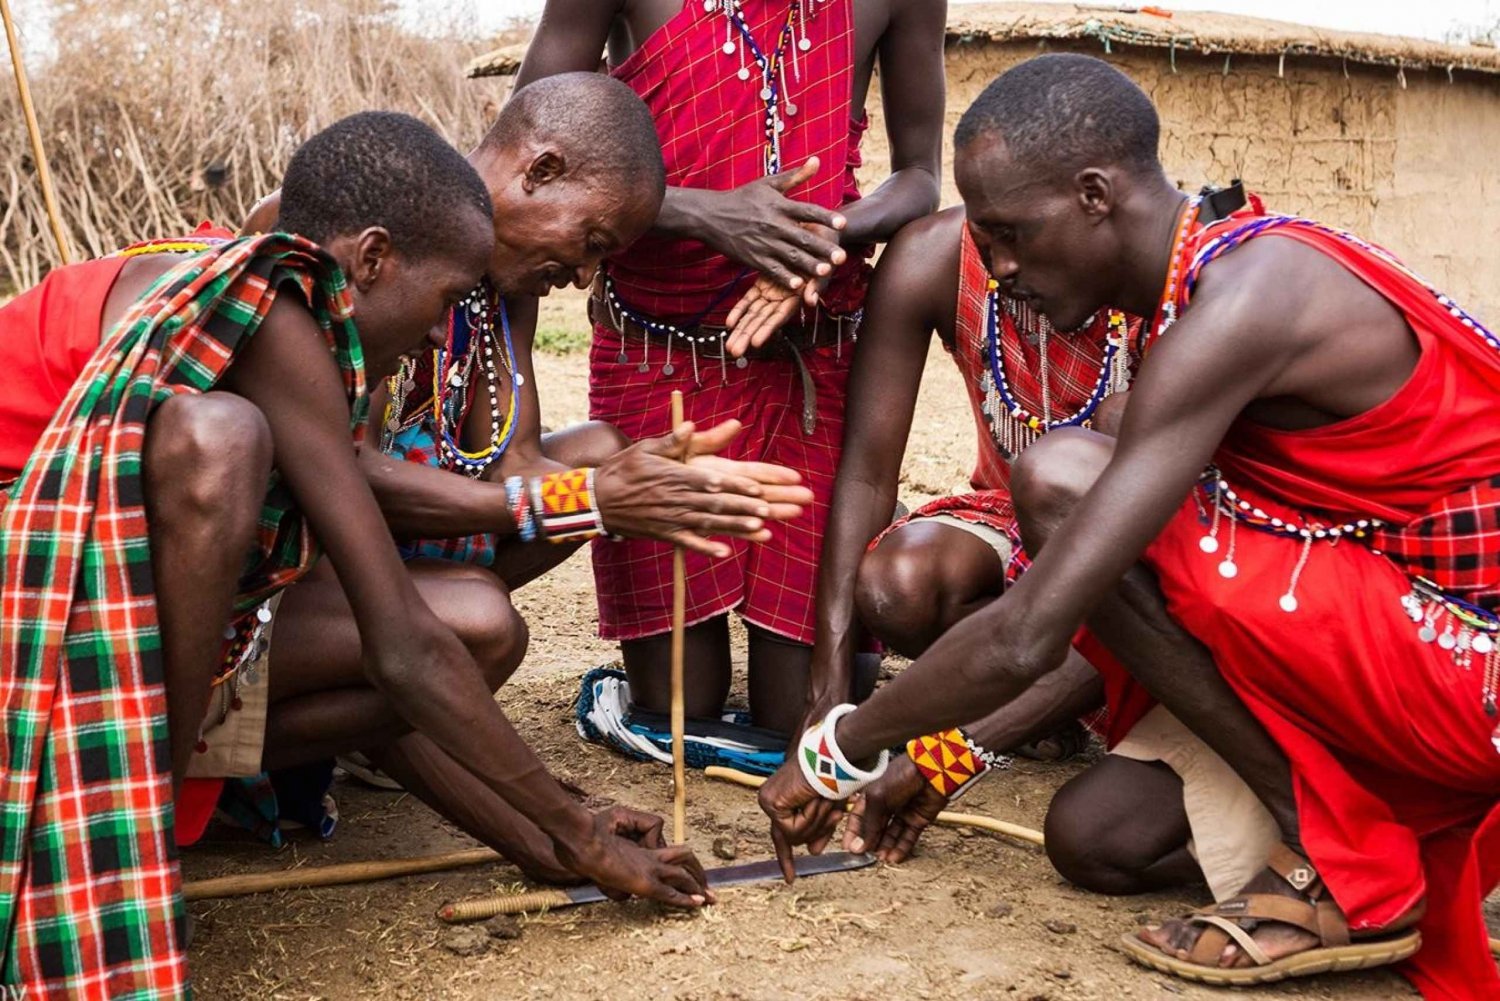 Wizyta w wiosce Masajów i gorące źródła Chemka z gorącym lunchem